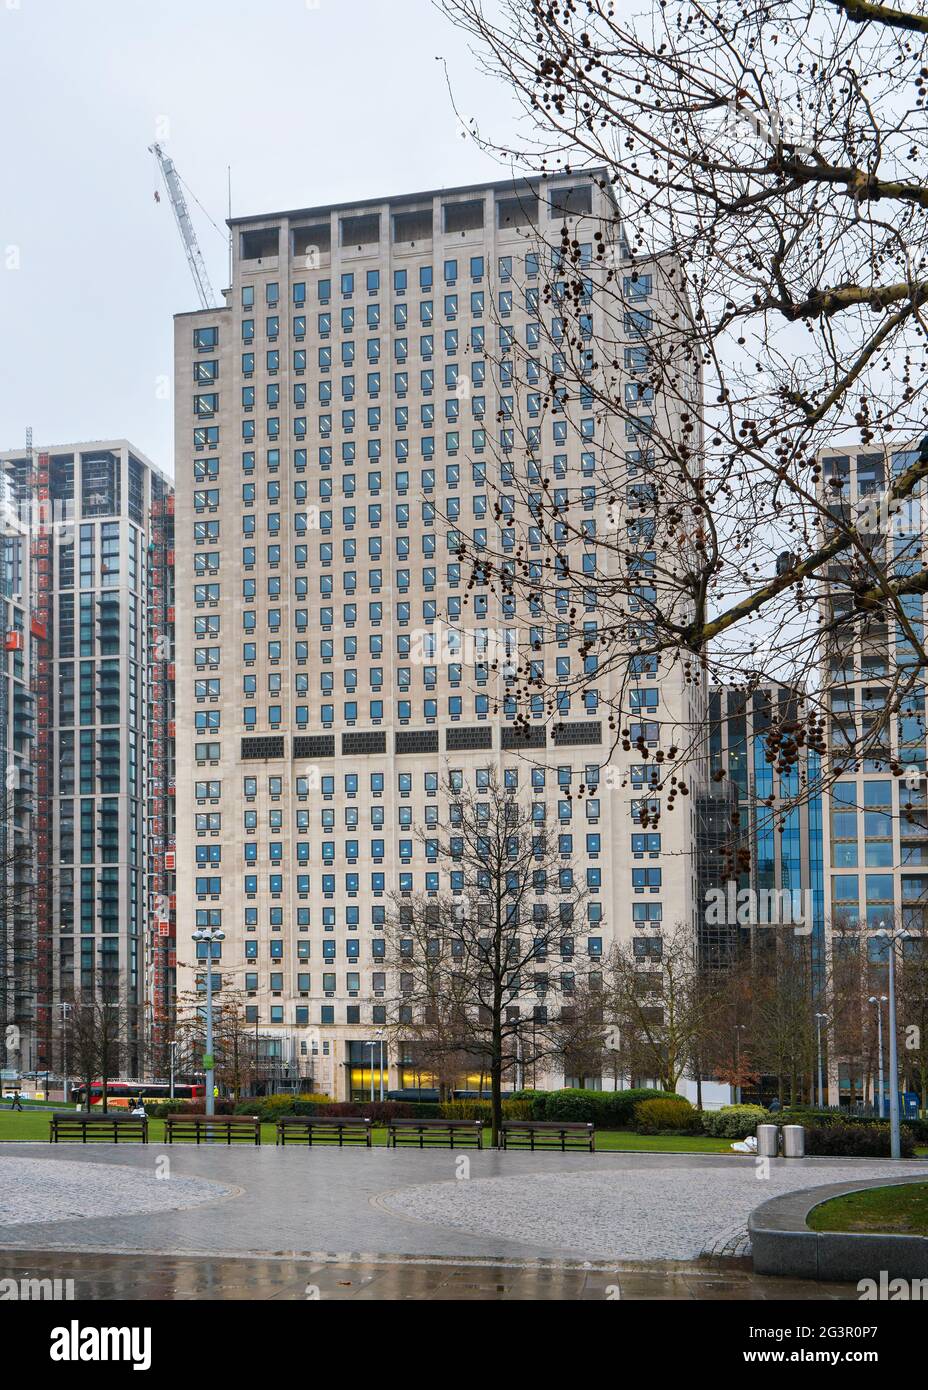 London, Vereinigtes Königreich - 04. Februar 2019: Shell Centre Gebäude in der britischen Hauptstadt an der Belvedere Road, Lambeth. Es ist eines der Öl-großen Shell-Unternehmen Headquar Stockfoto